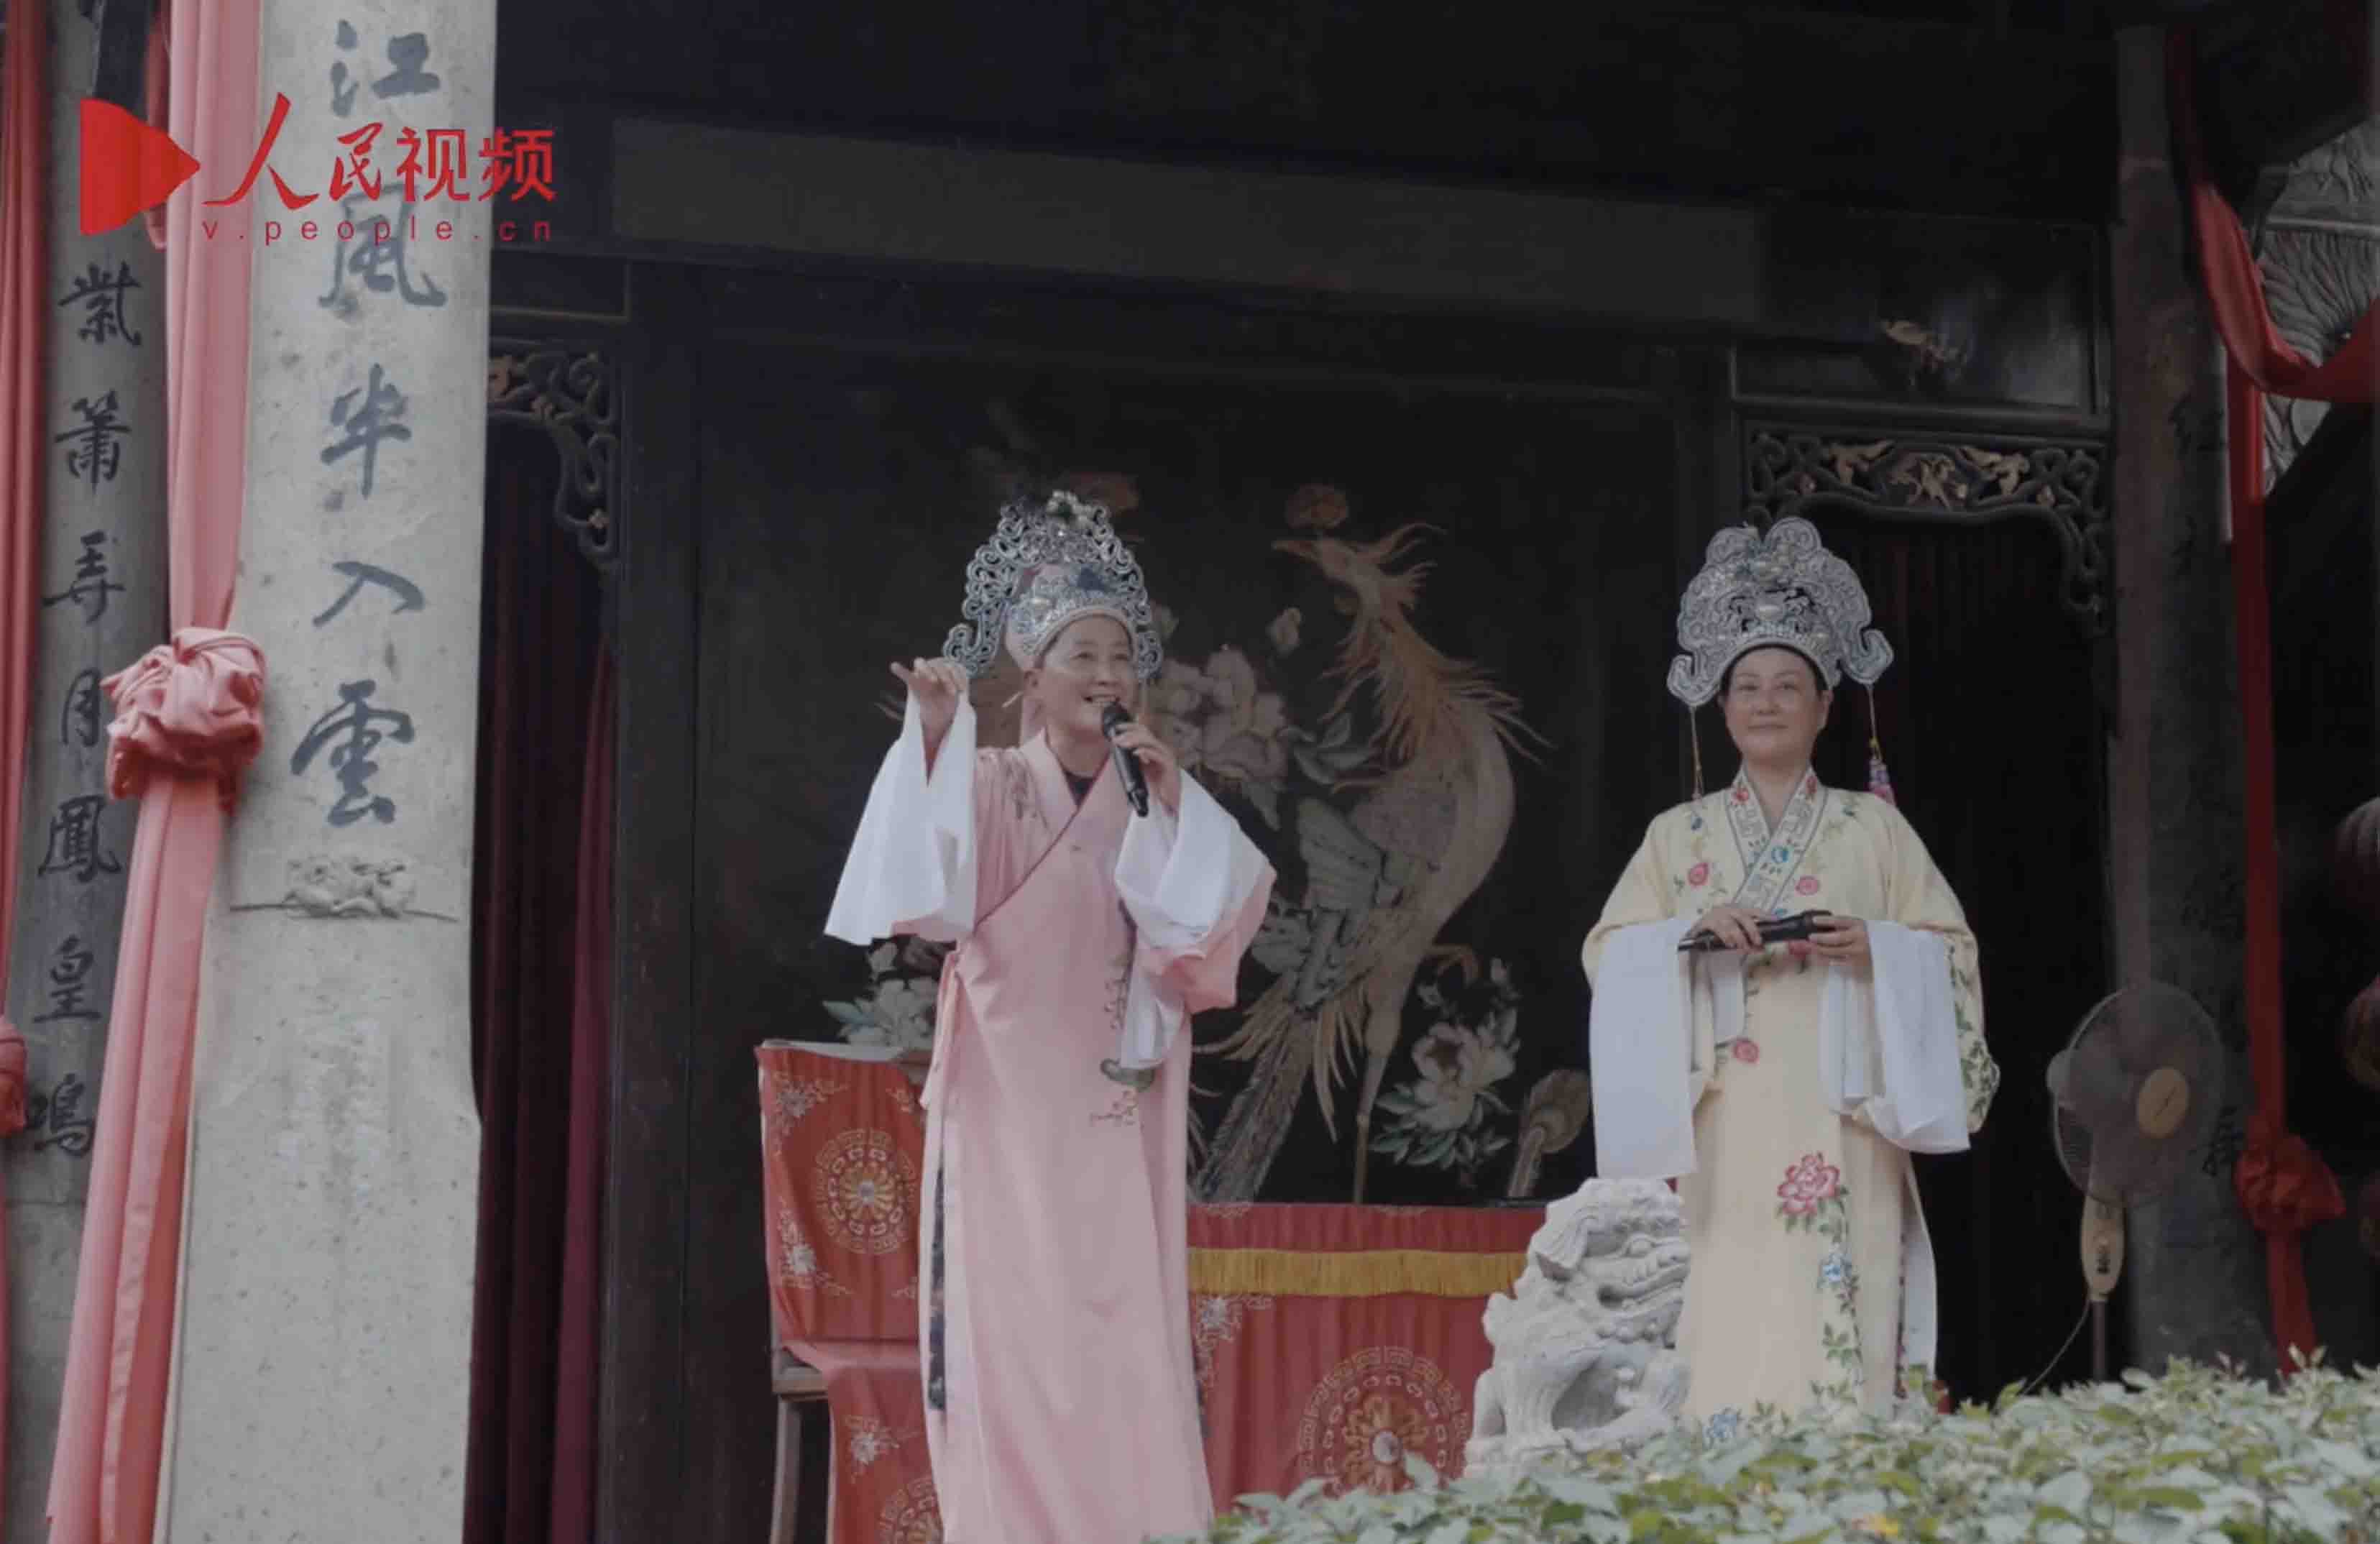 Sing the Chinese "Romeo and Juliet" in Yue Opera with artists in Shengzhou, E China's Zhejiang